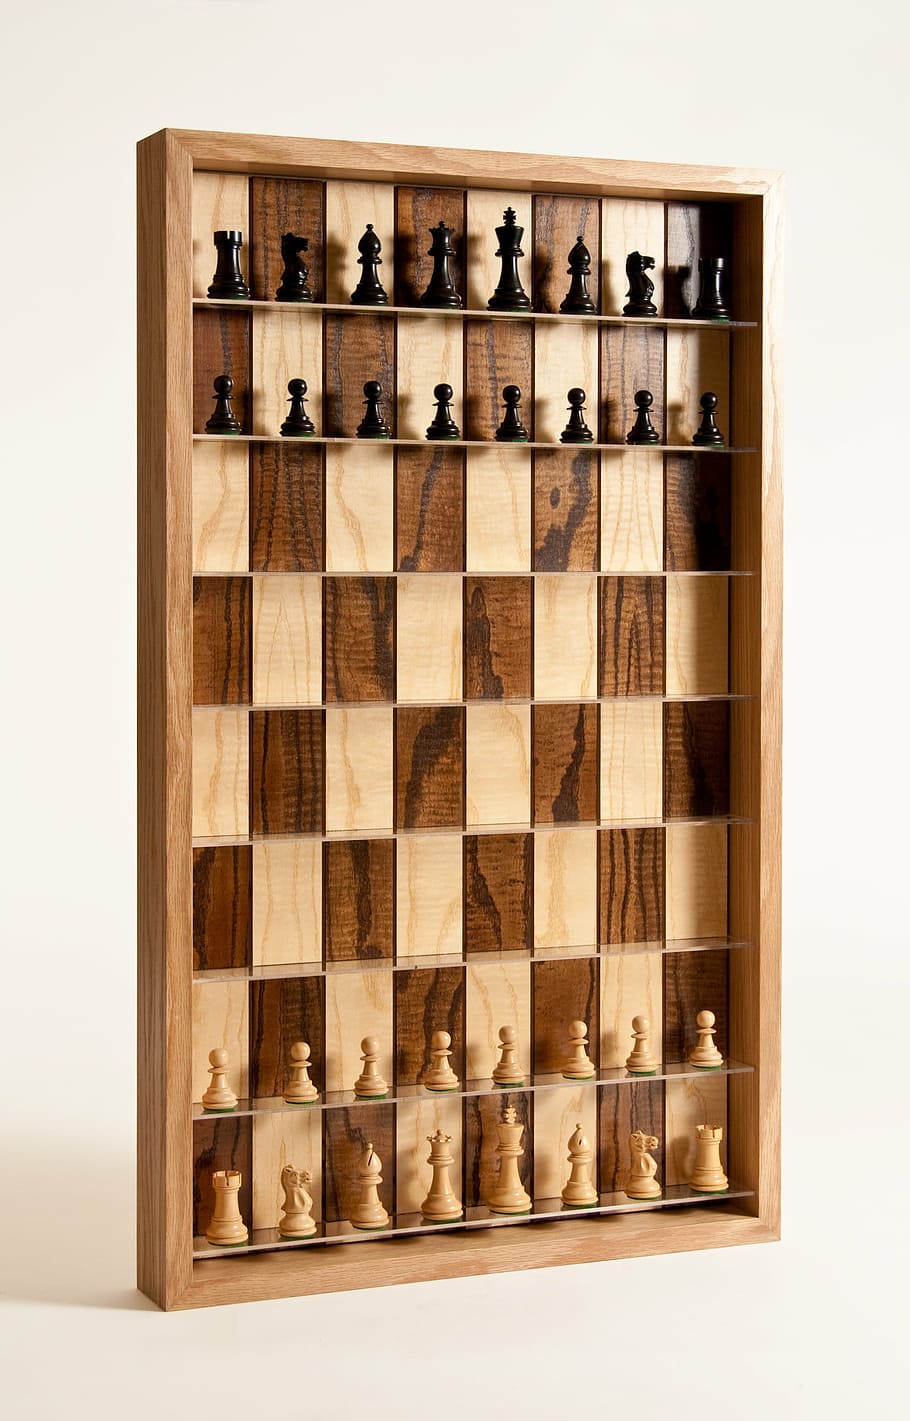 チェス, 垂直チェス盤, 3dチェス, 垂直, ゲーム, チェスマン, チェス盤, 屋内, スタジオショット, ボードゲーム